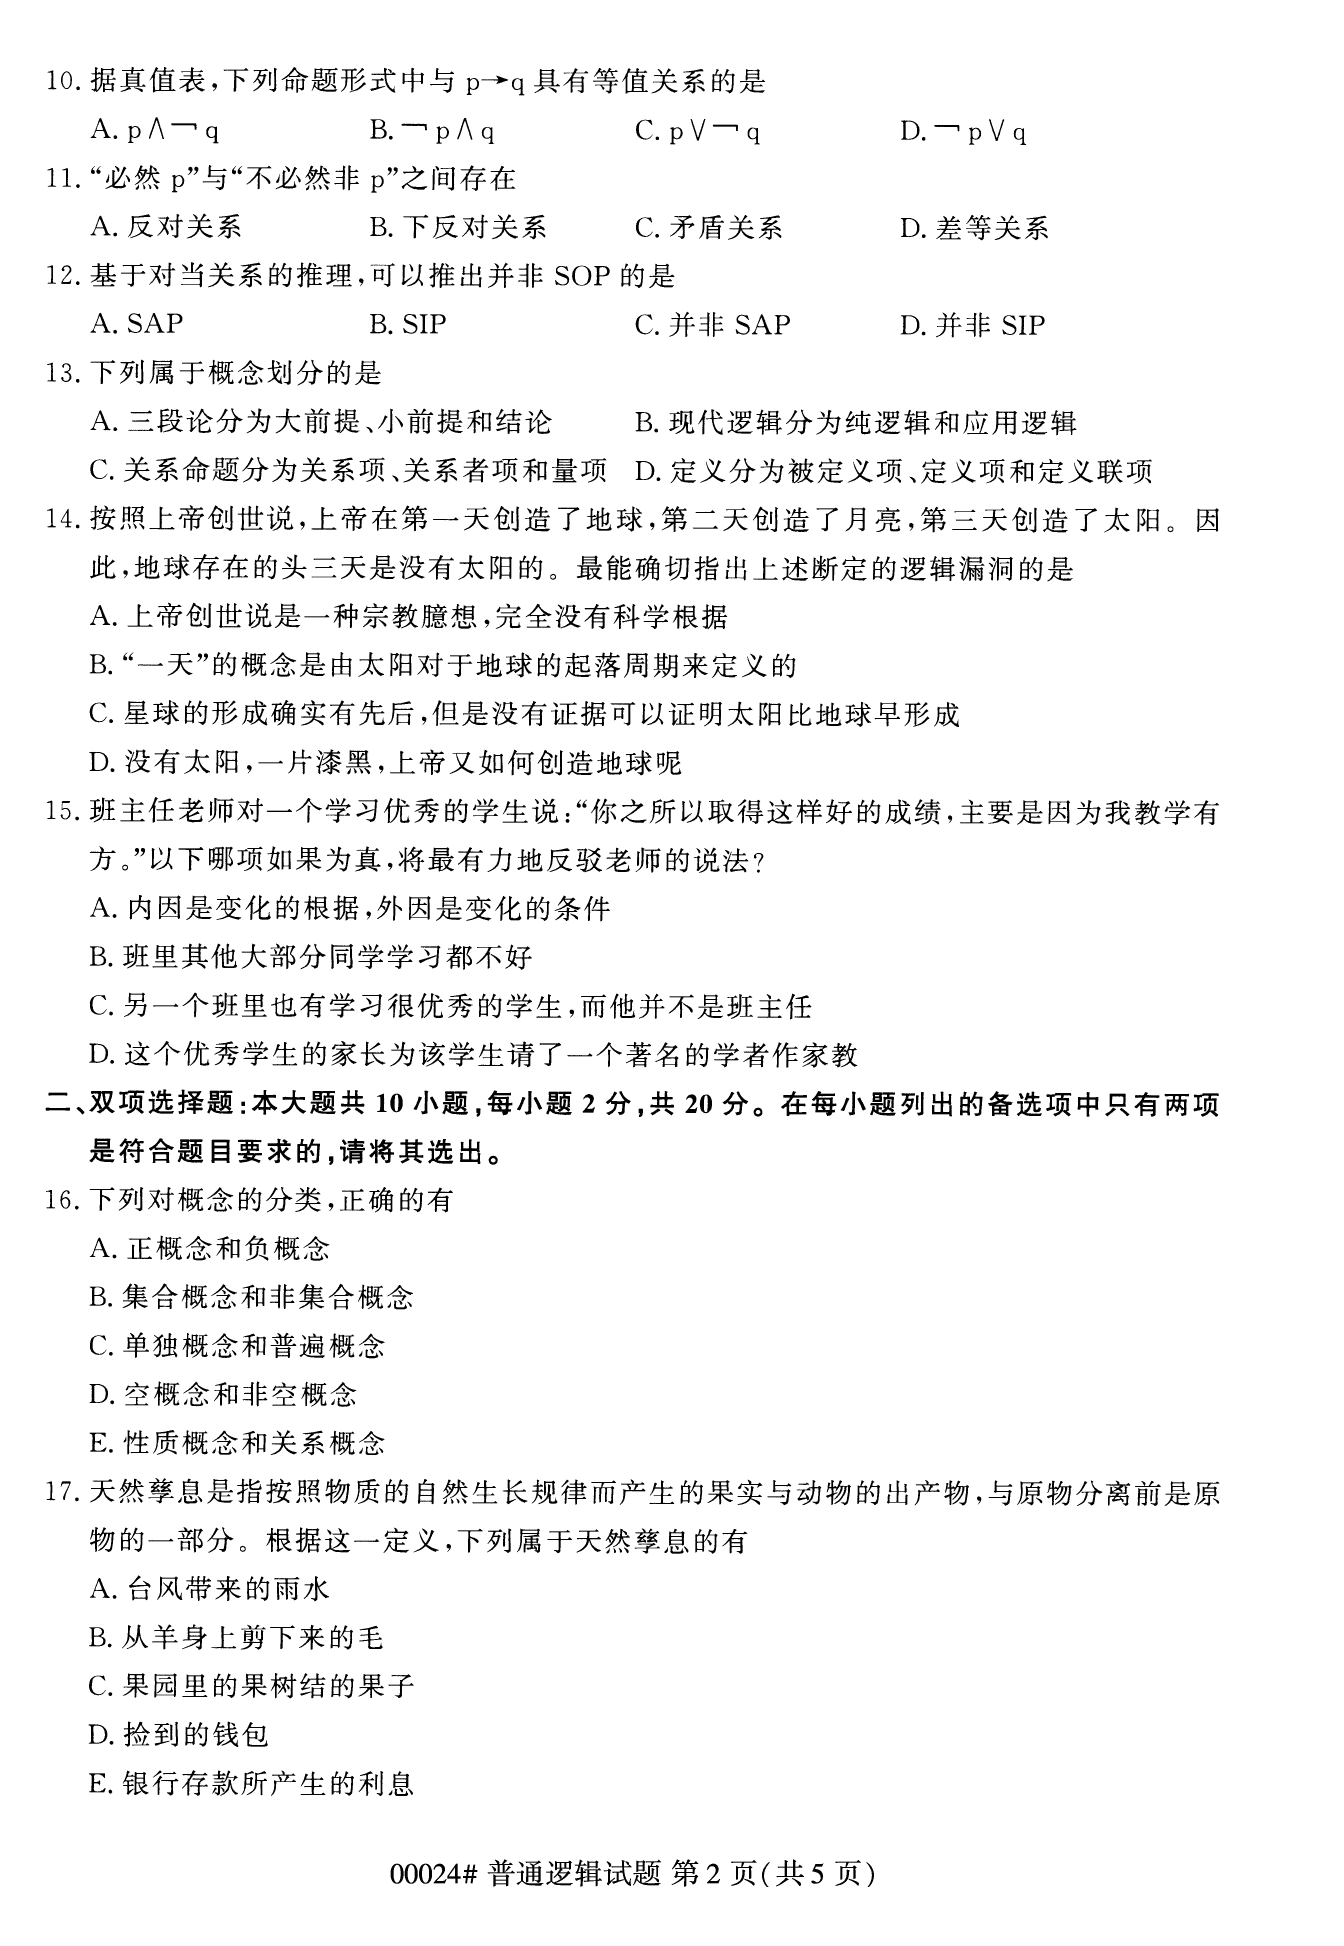 2022年10月上海自考00024普通逻辑真题试卷